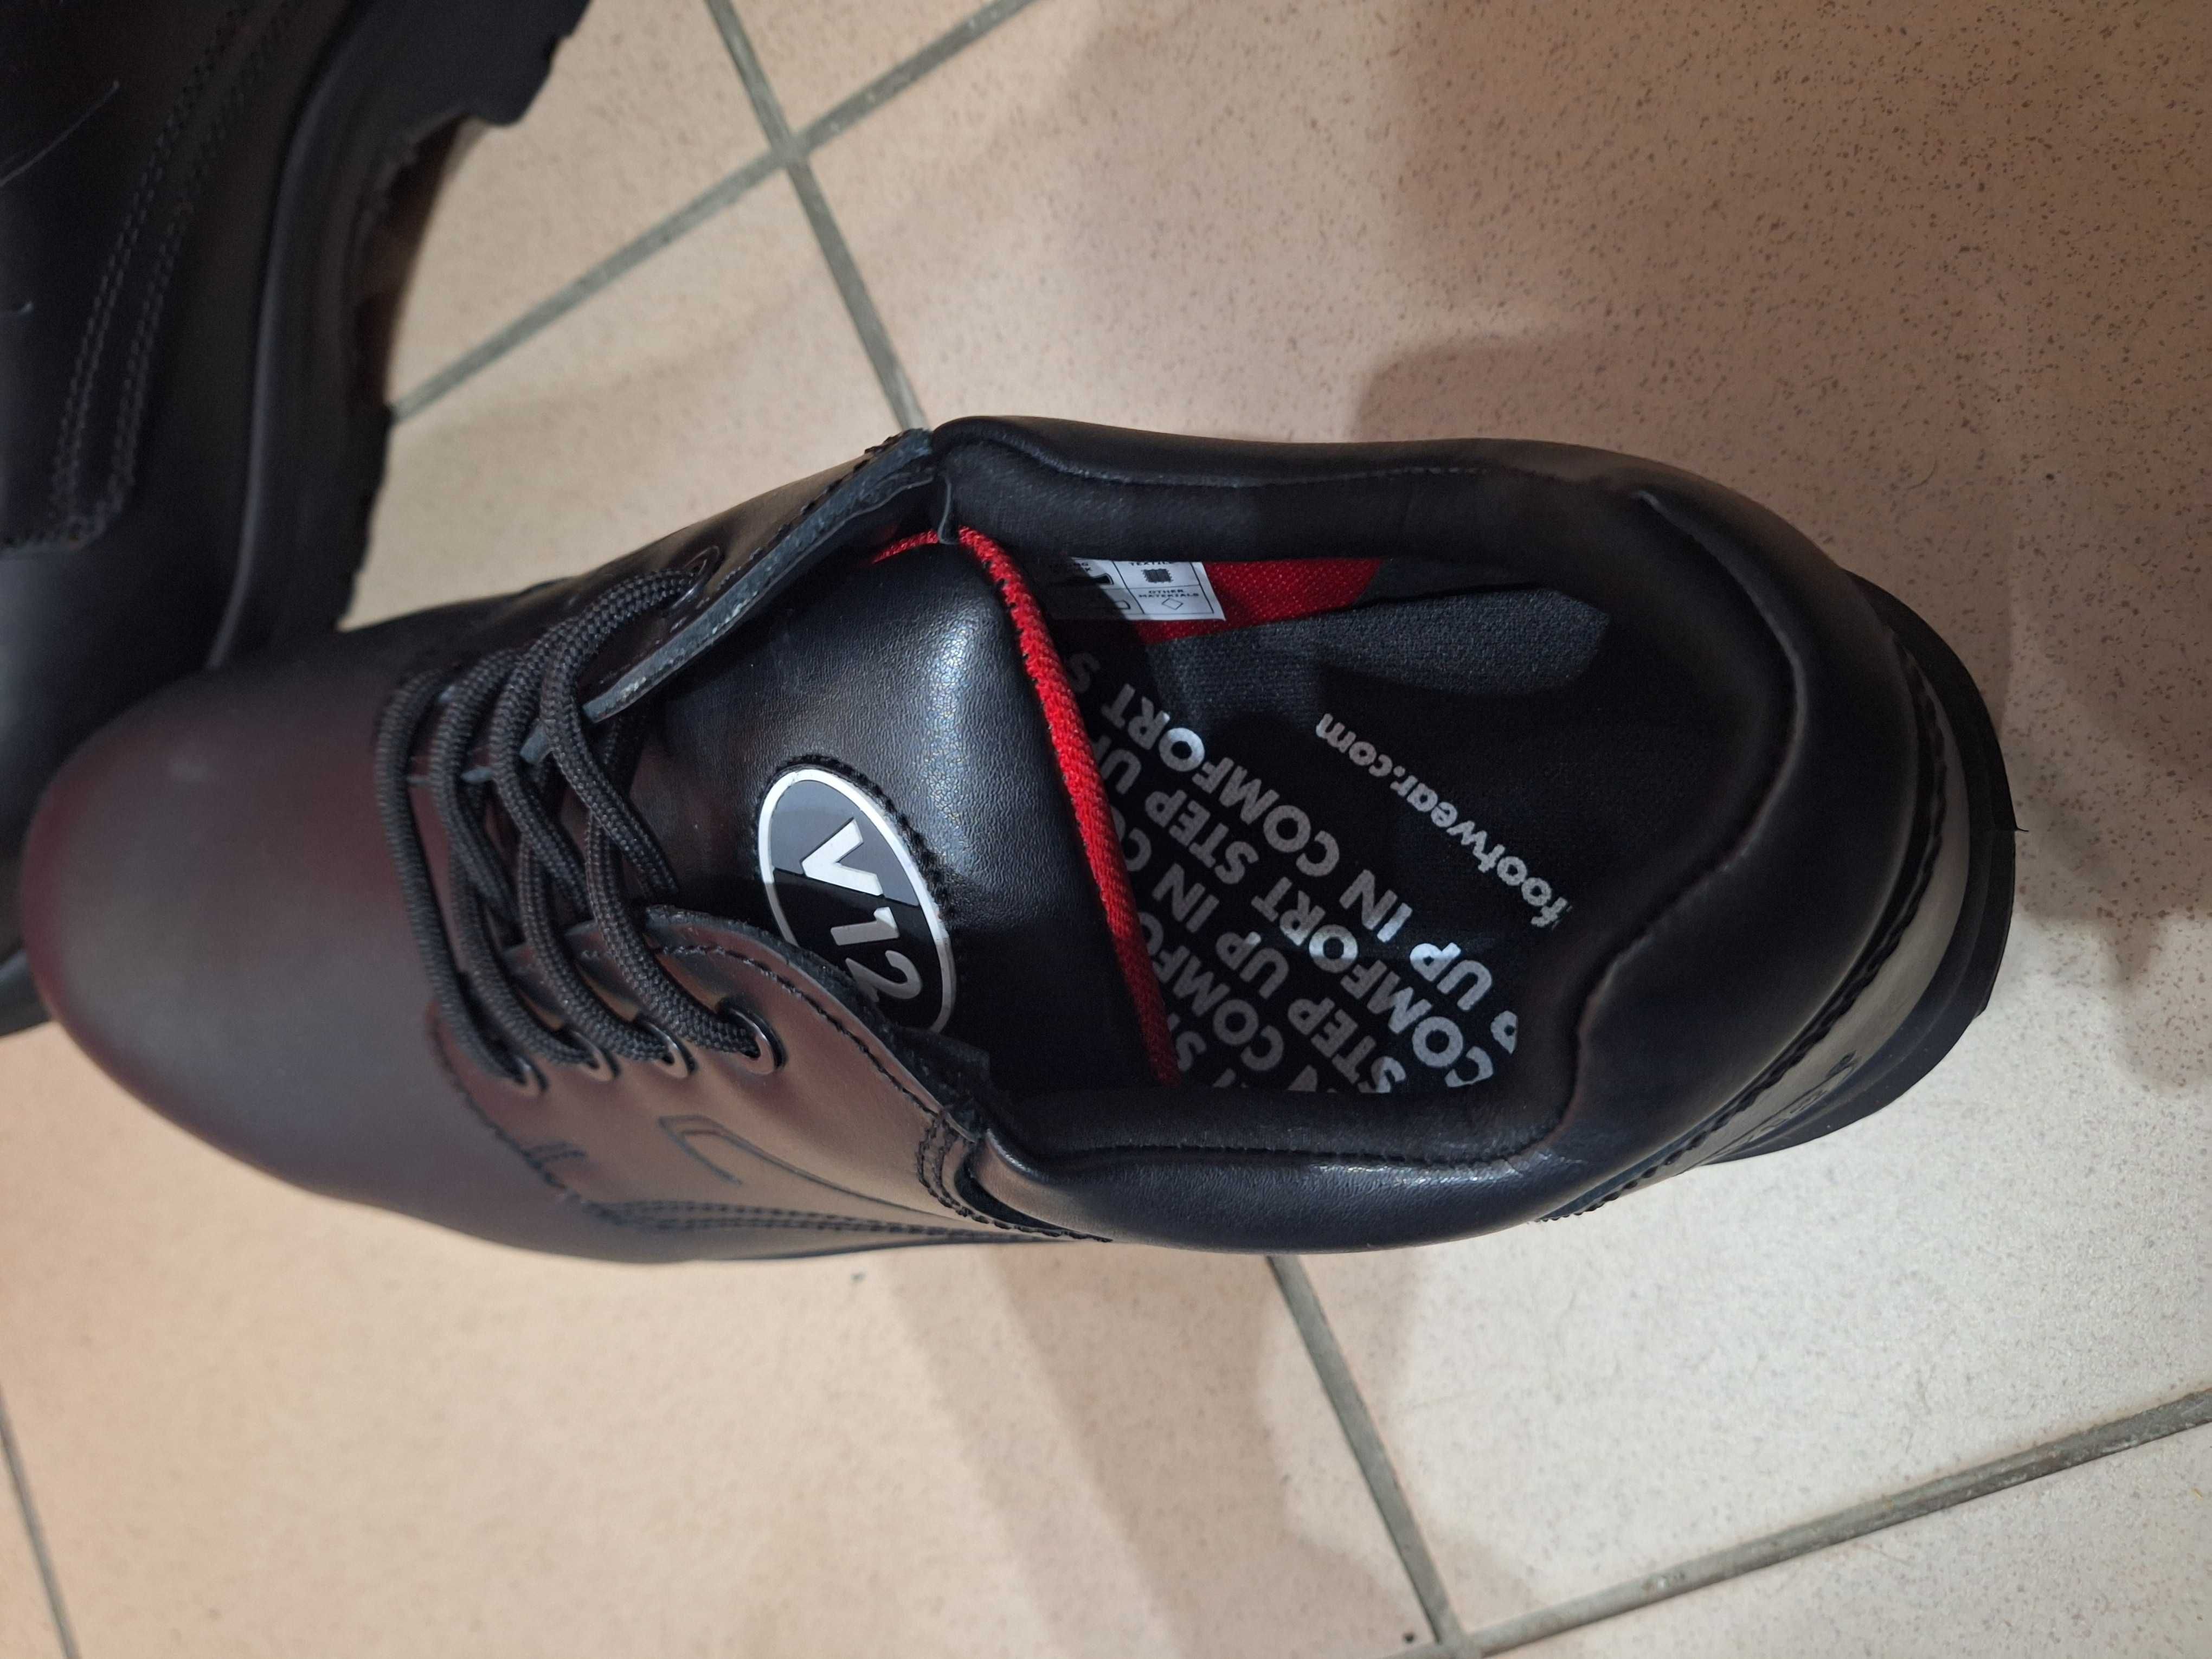 NOWE buty robocze elektroizolacyjne V12 V6411.01 ochronne r46